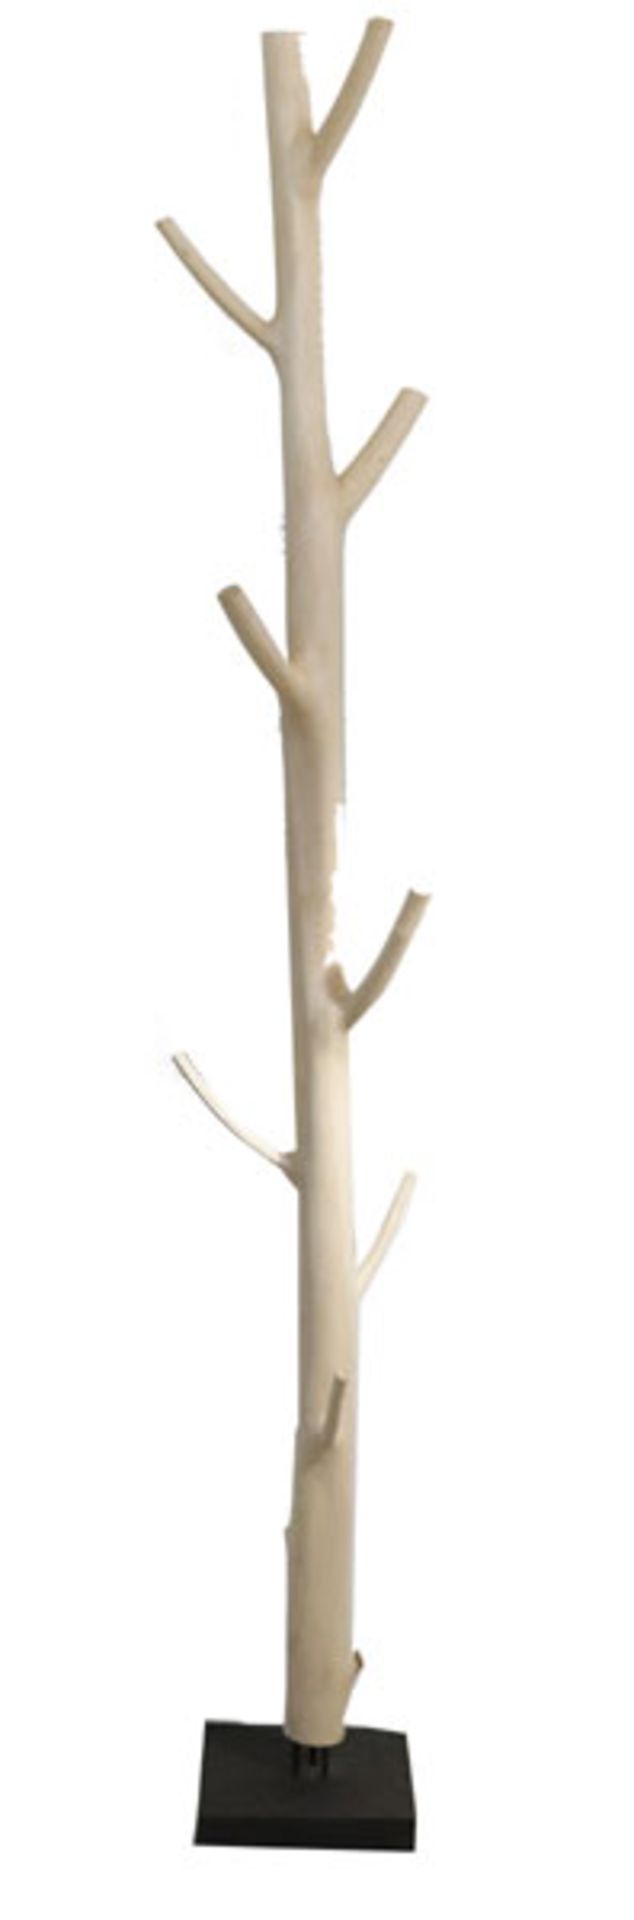 Holz Kleiderständer-Baum, beschliffen auf Ständer, H 202 cm, D ca. 27 cm, leichte Gebrauchsspuren